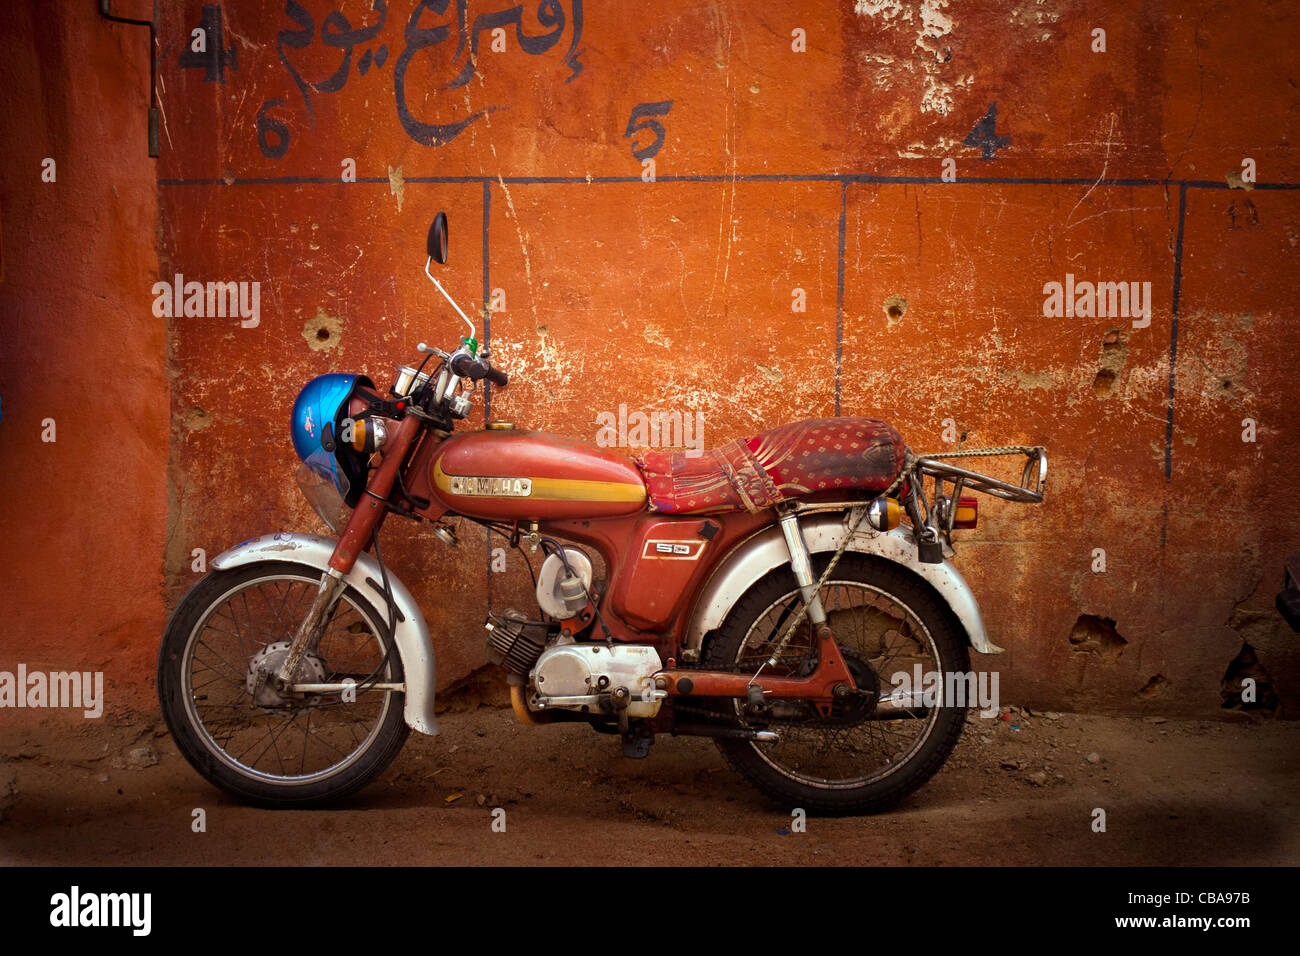 Yamaha 50 Banque de photographies et d'images à haute résolution - Alamy